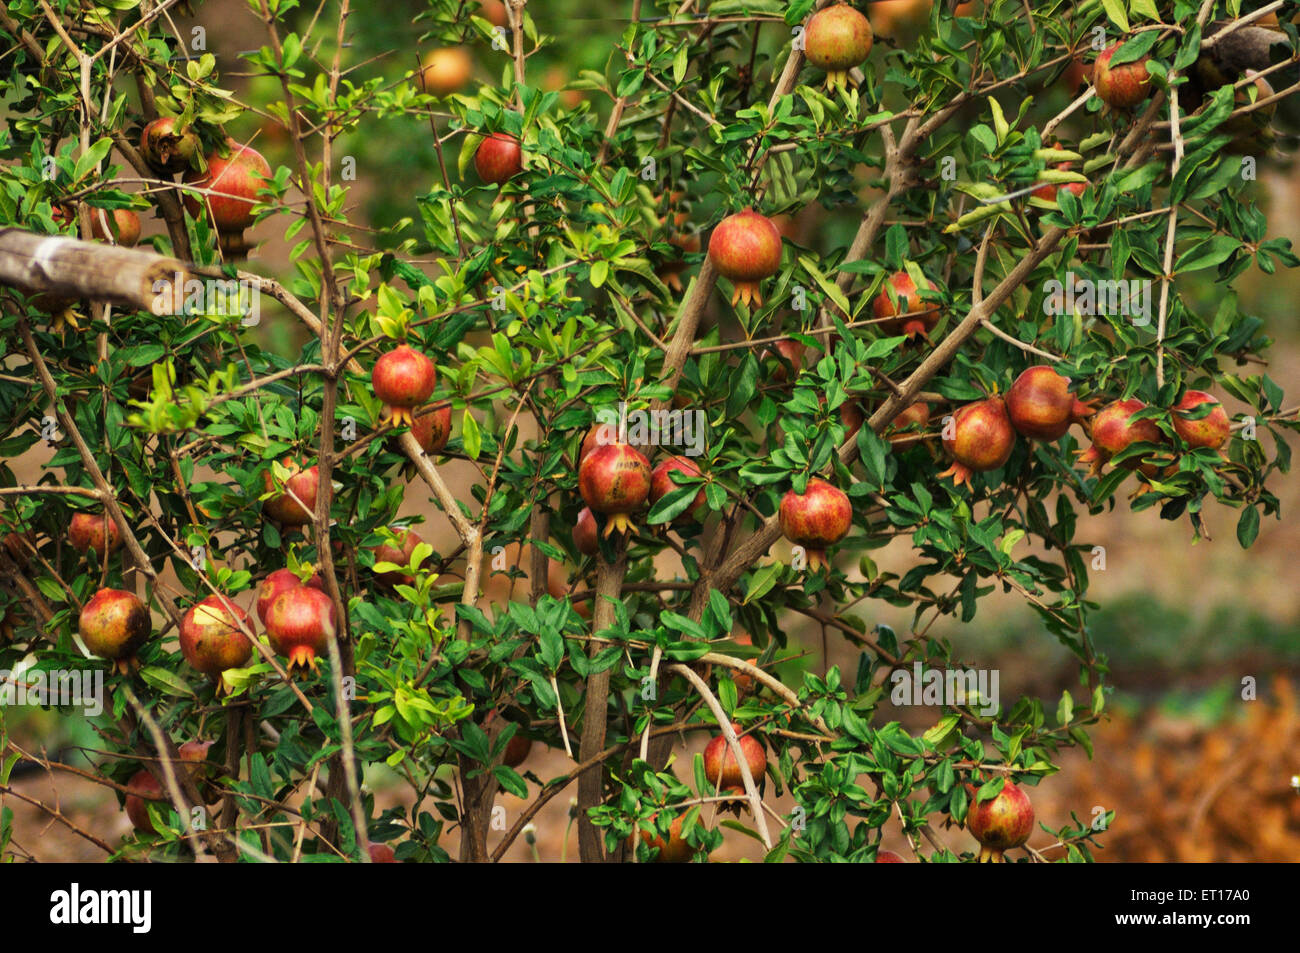 Pomegranate fruits on trees Maharashtra India Asia Stock Photo